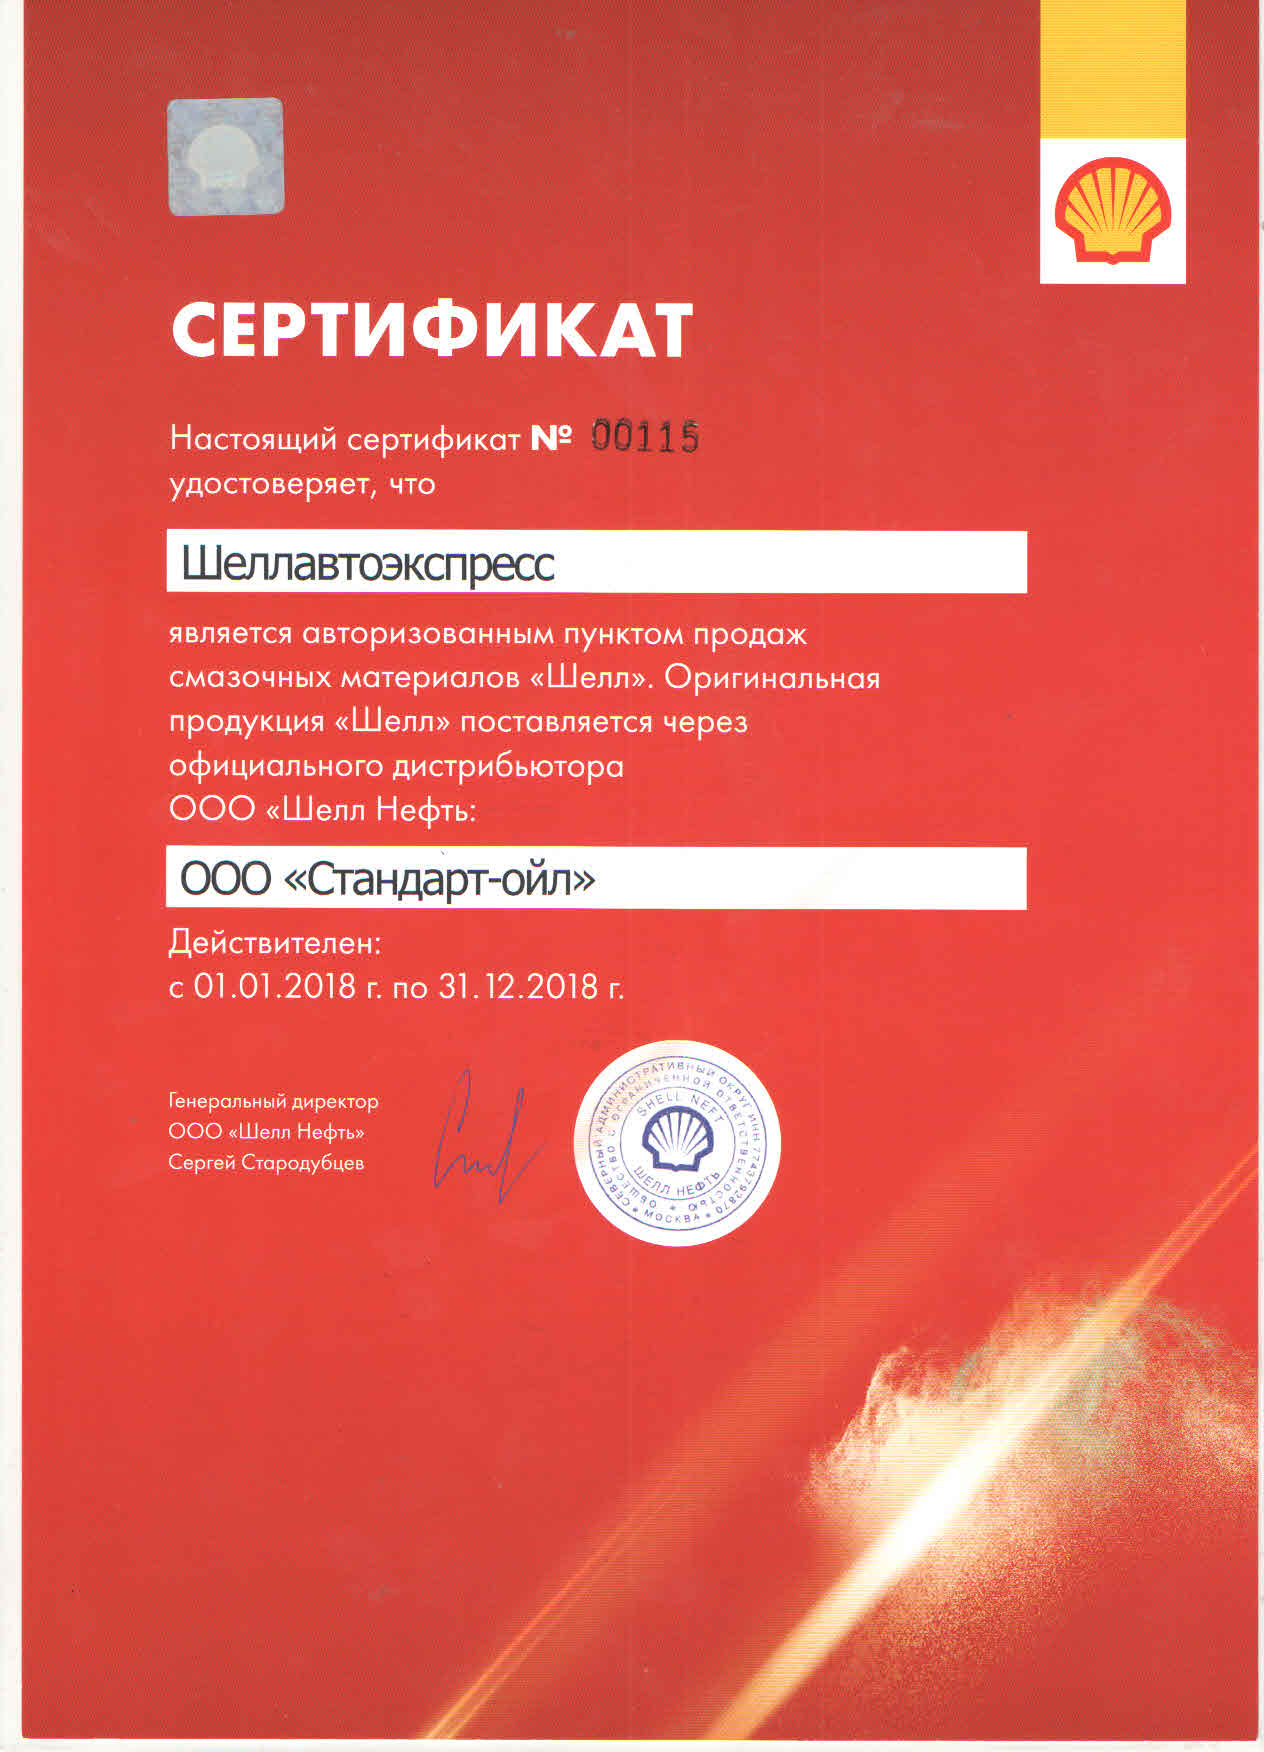 Сертификат авторизованного пункта продаж масел Shell в Москве ЗАО